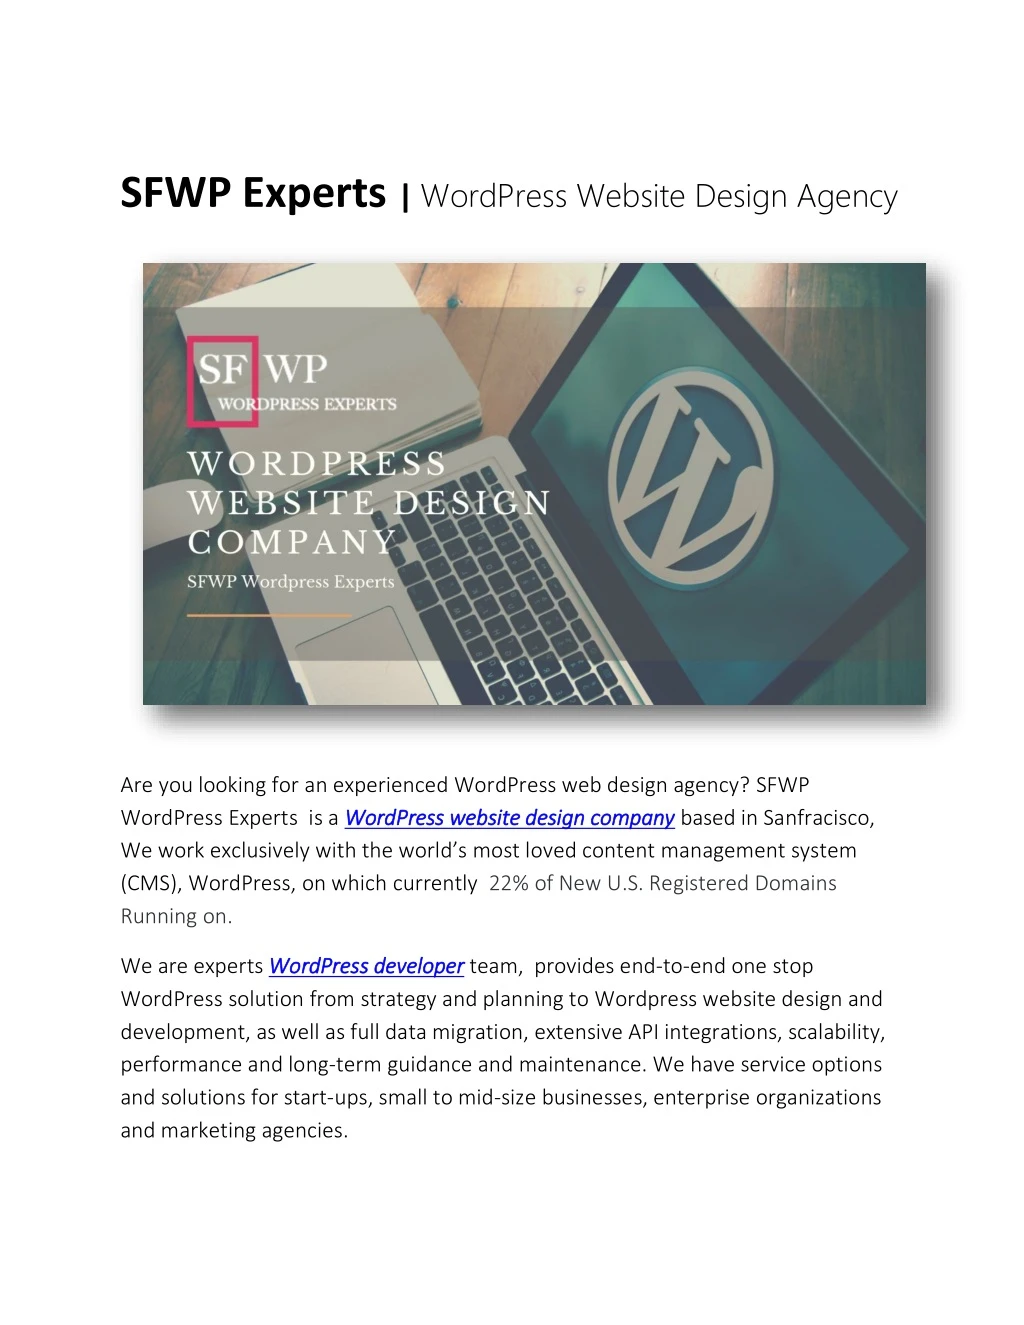 sfwp experts wordpress website design agency